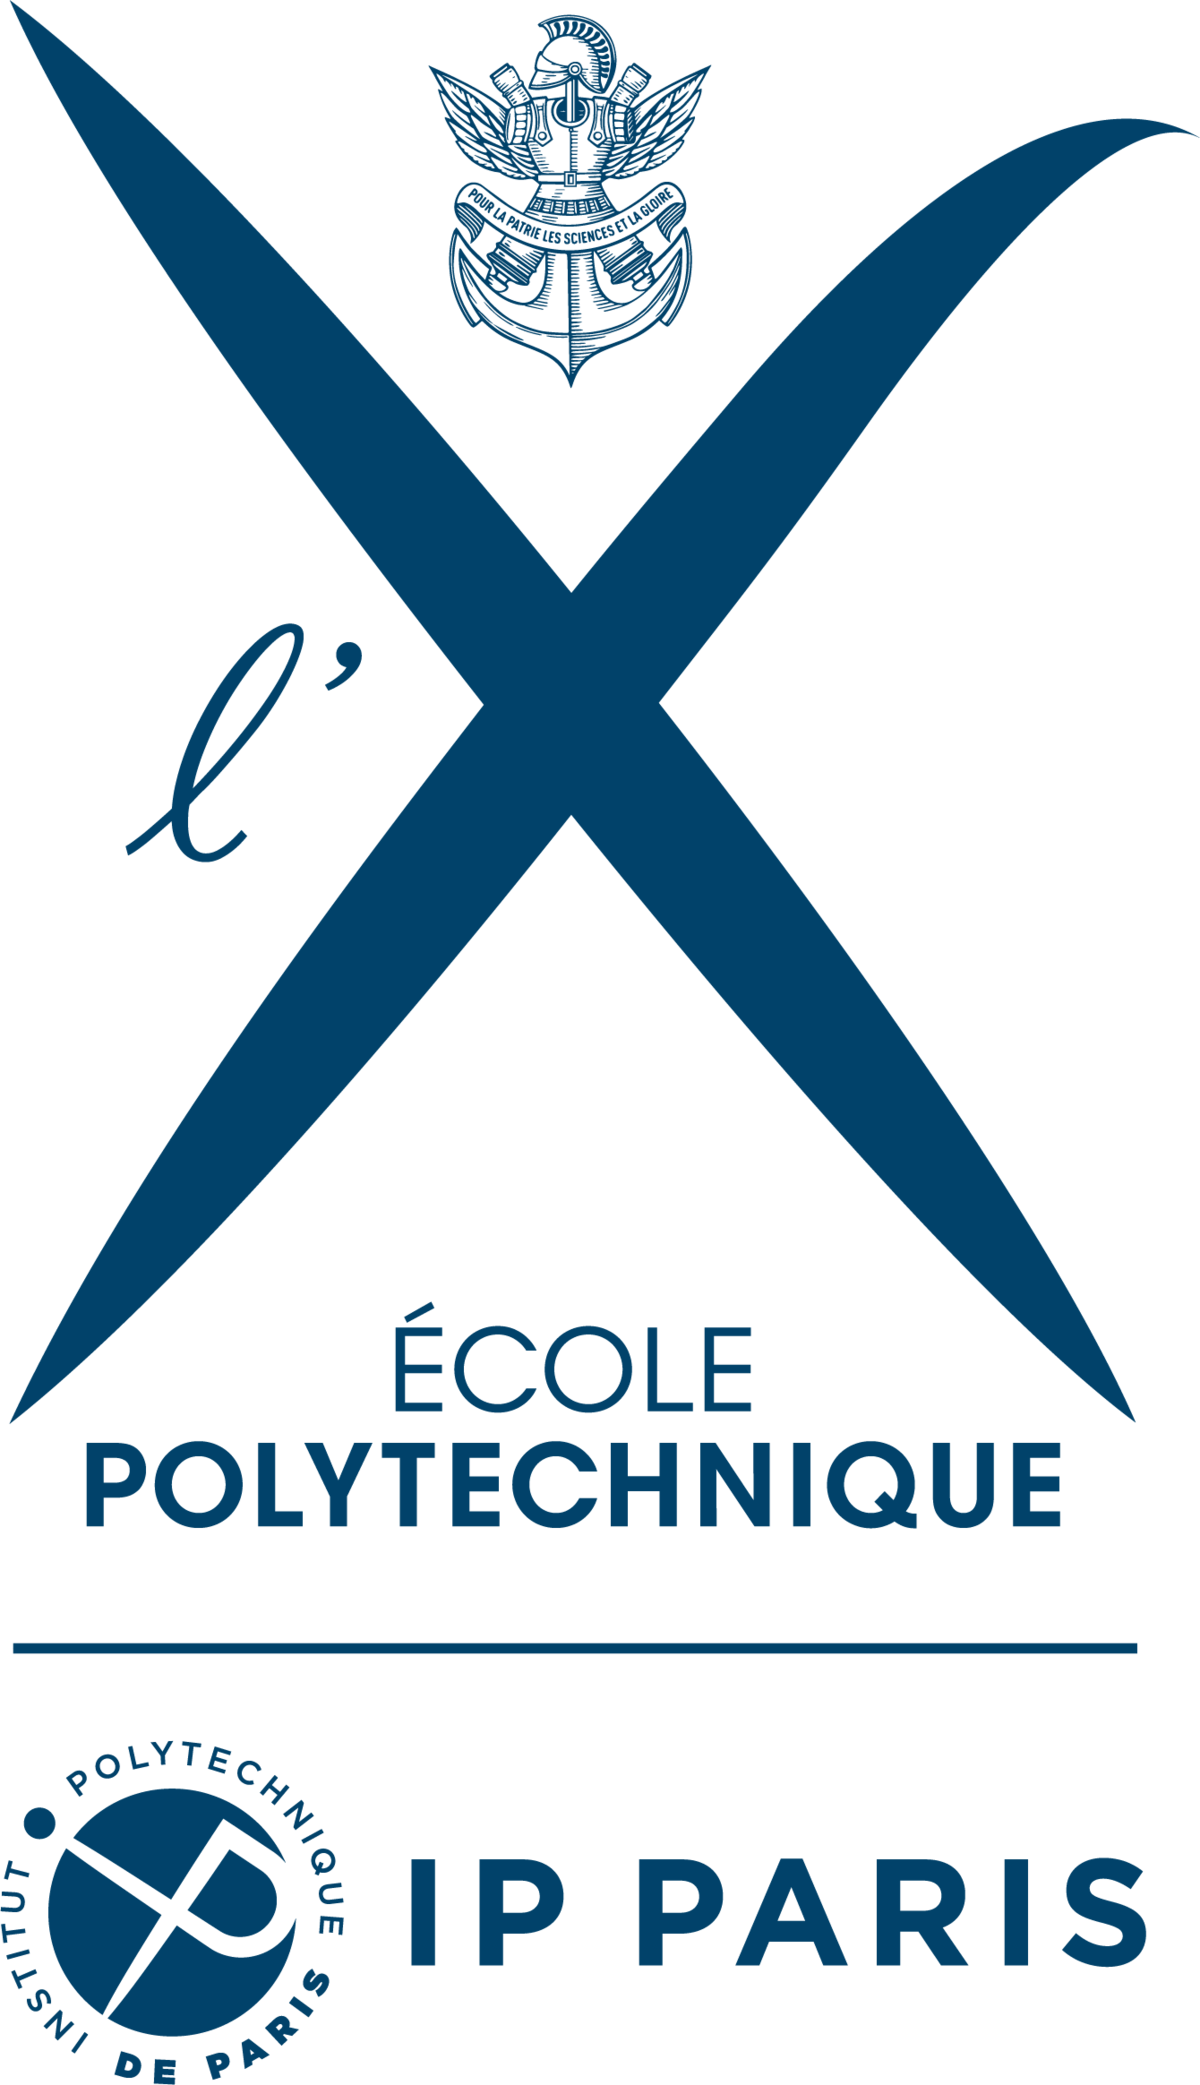 Accompagnement administratif – Institut polytechnique de Paris